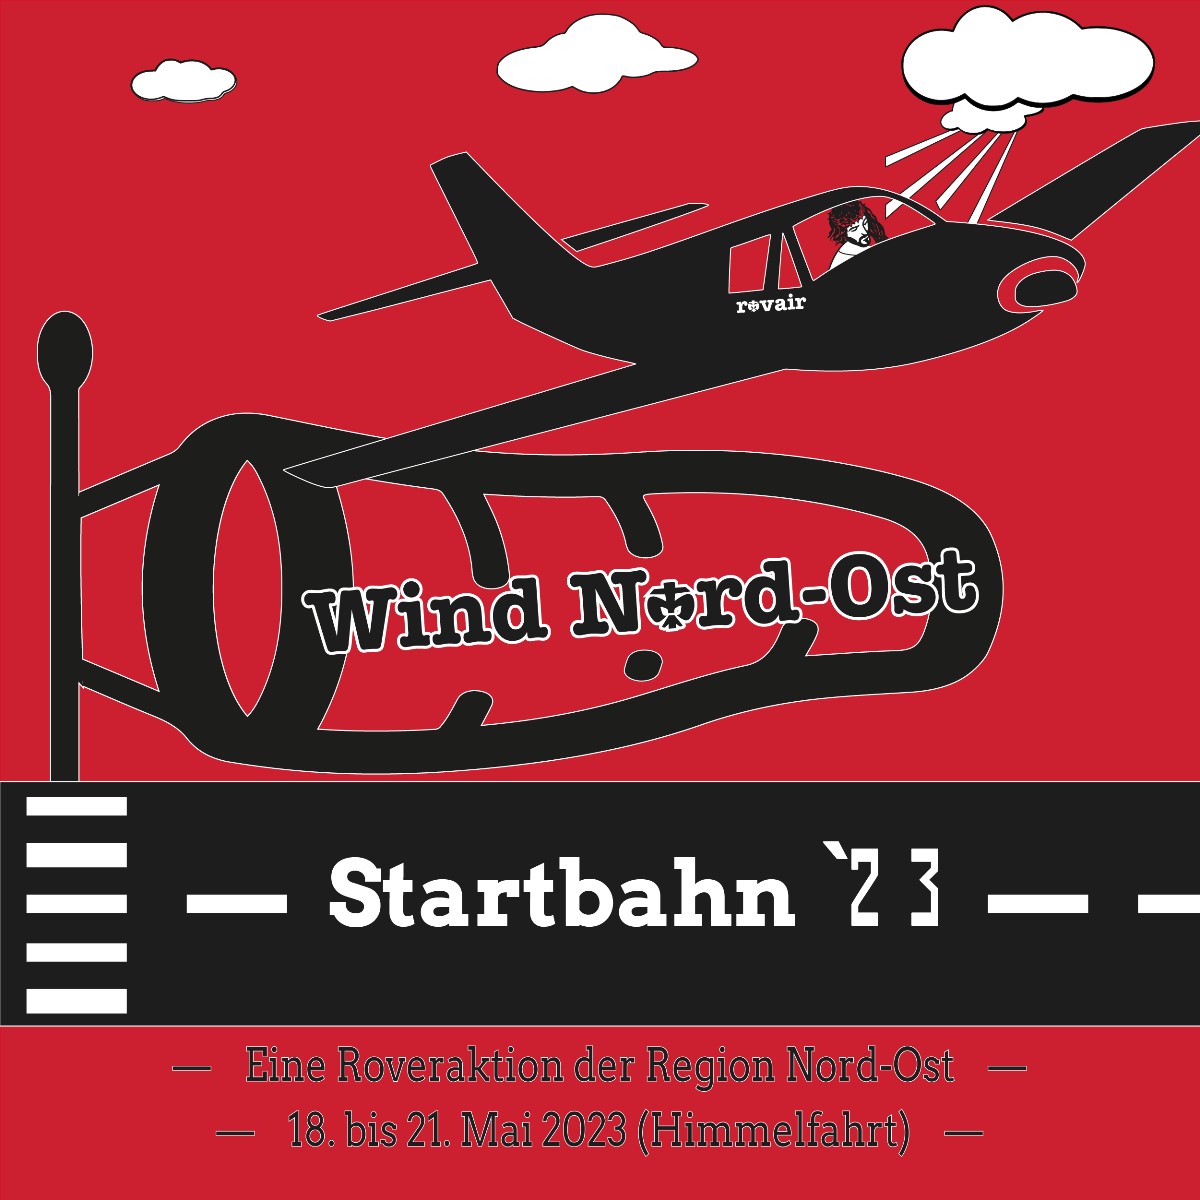 Wind Nord-Ost Startbahn 23